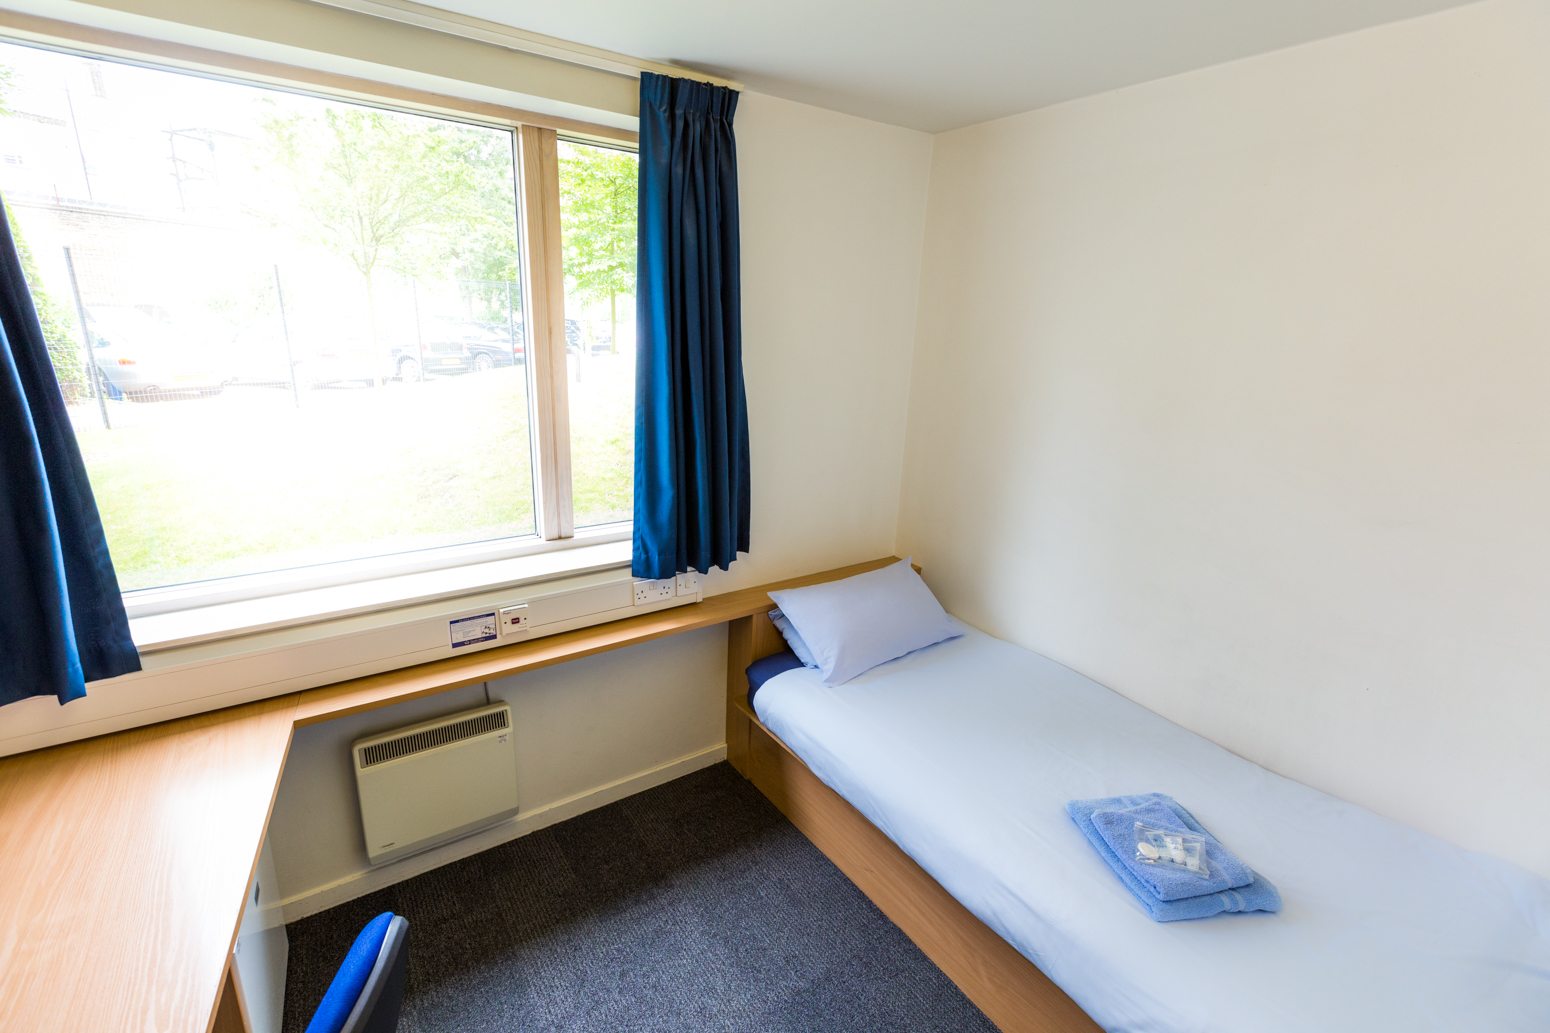 Queen Mary University of London - Bedroom